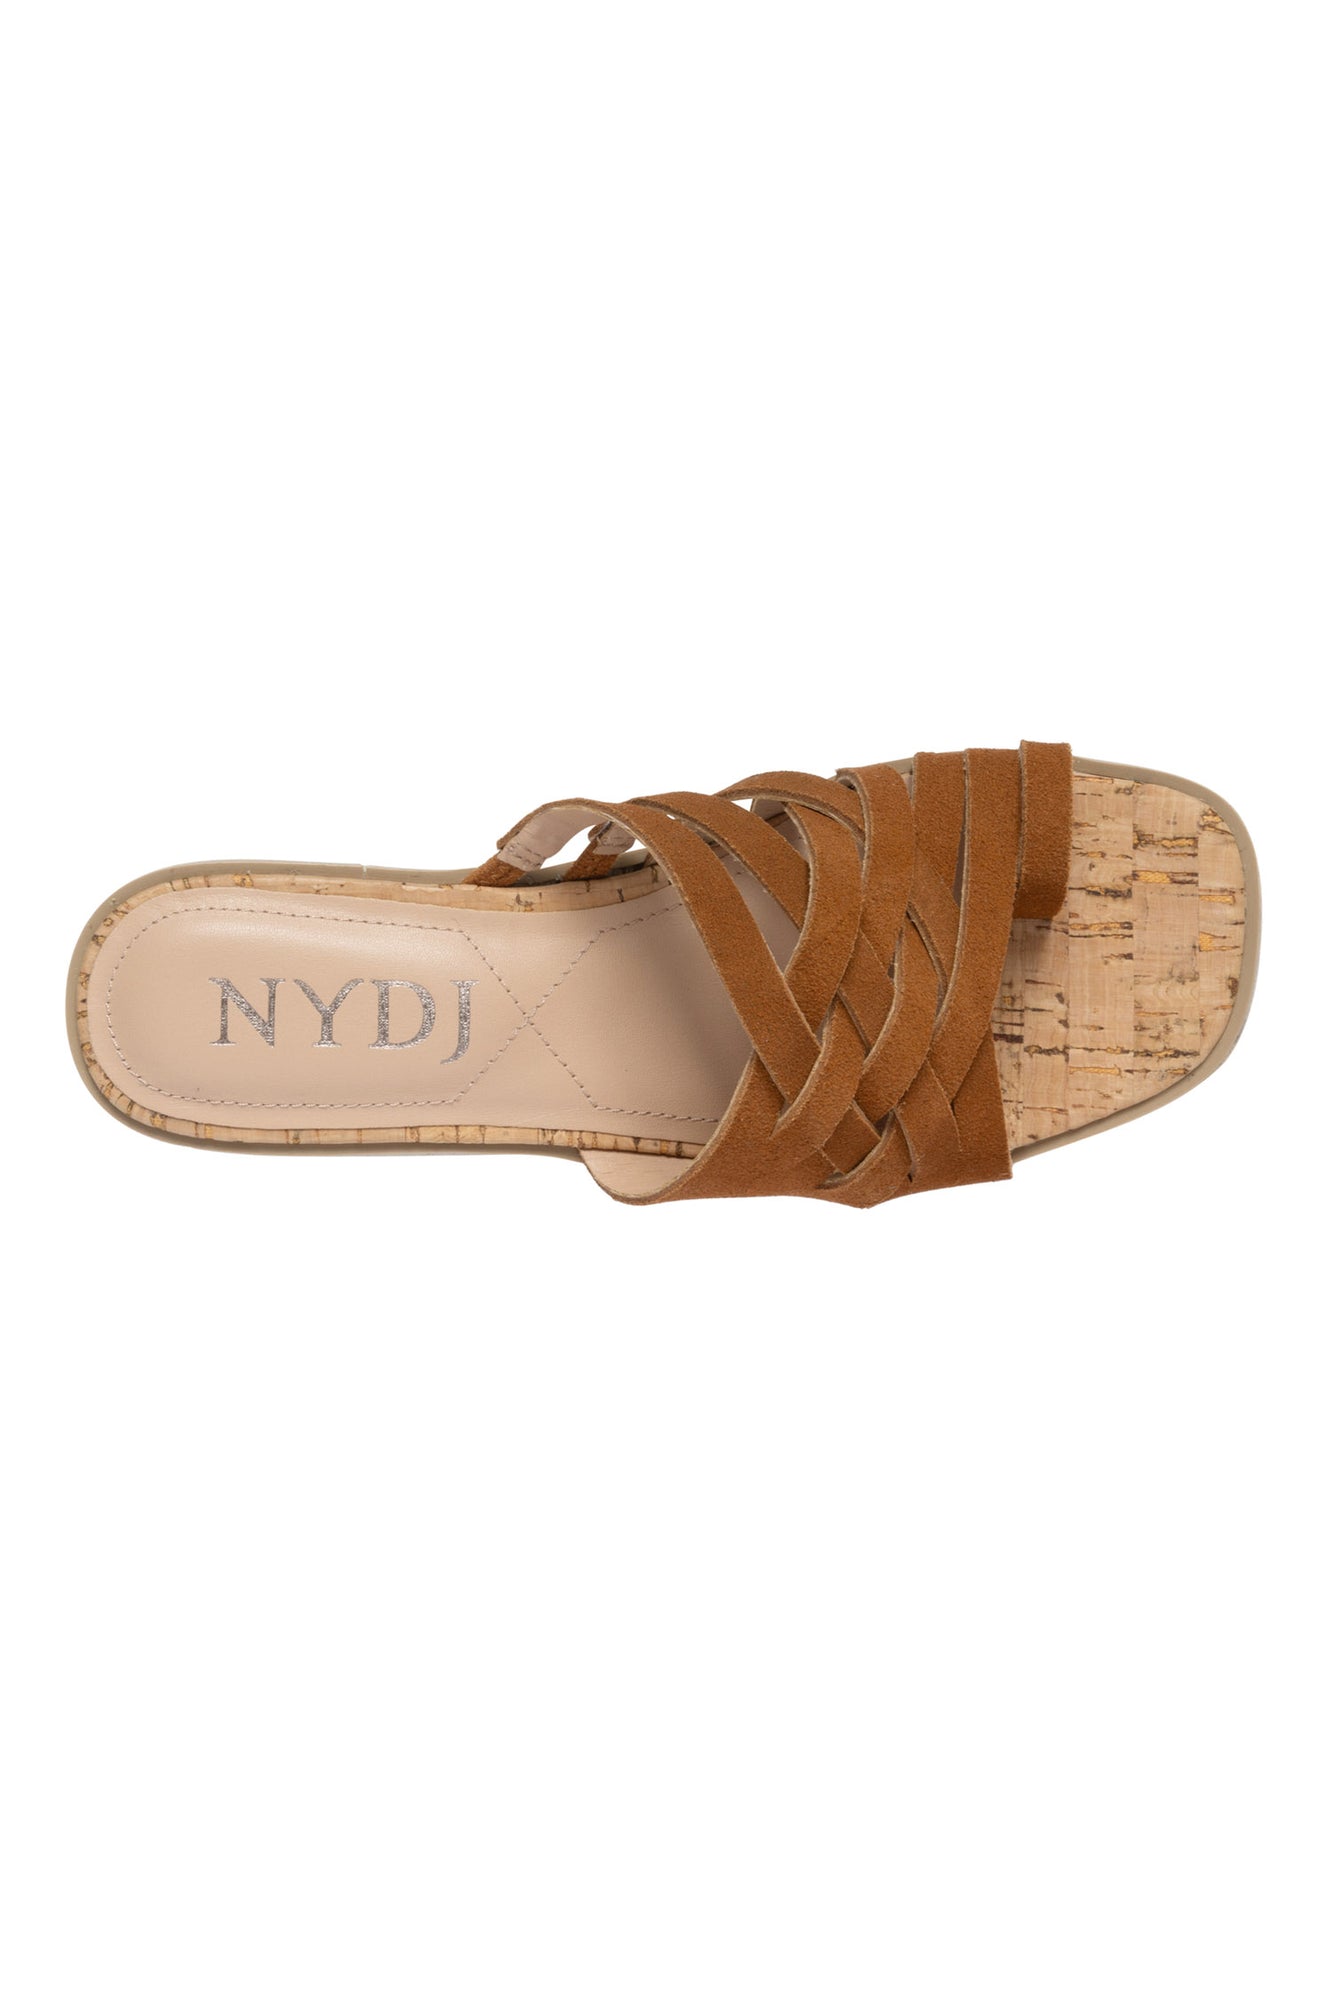 NYDJ Reesie Wedge Sandals In Suede - Cognac